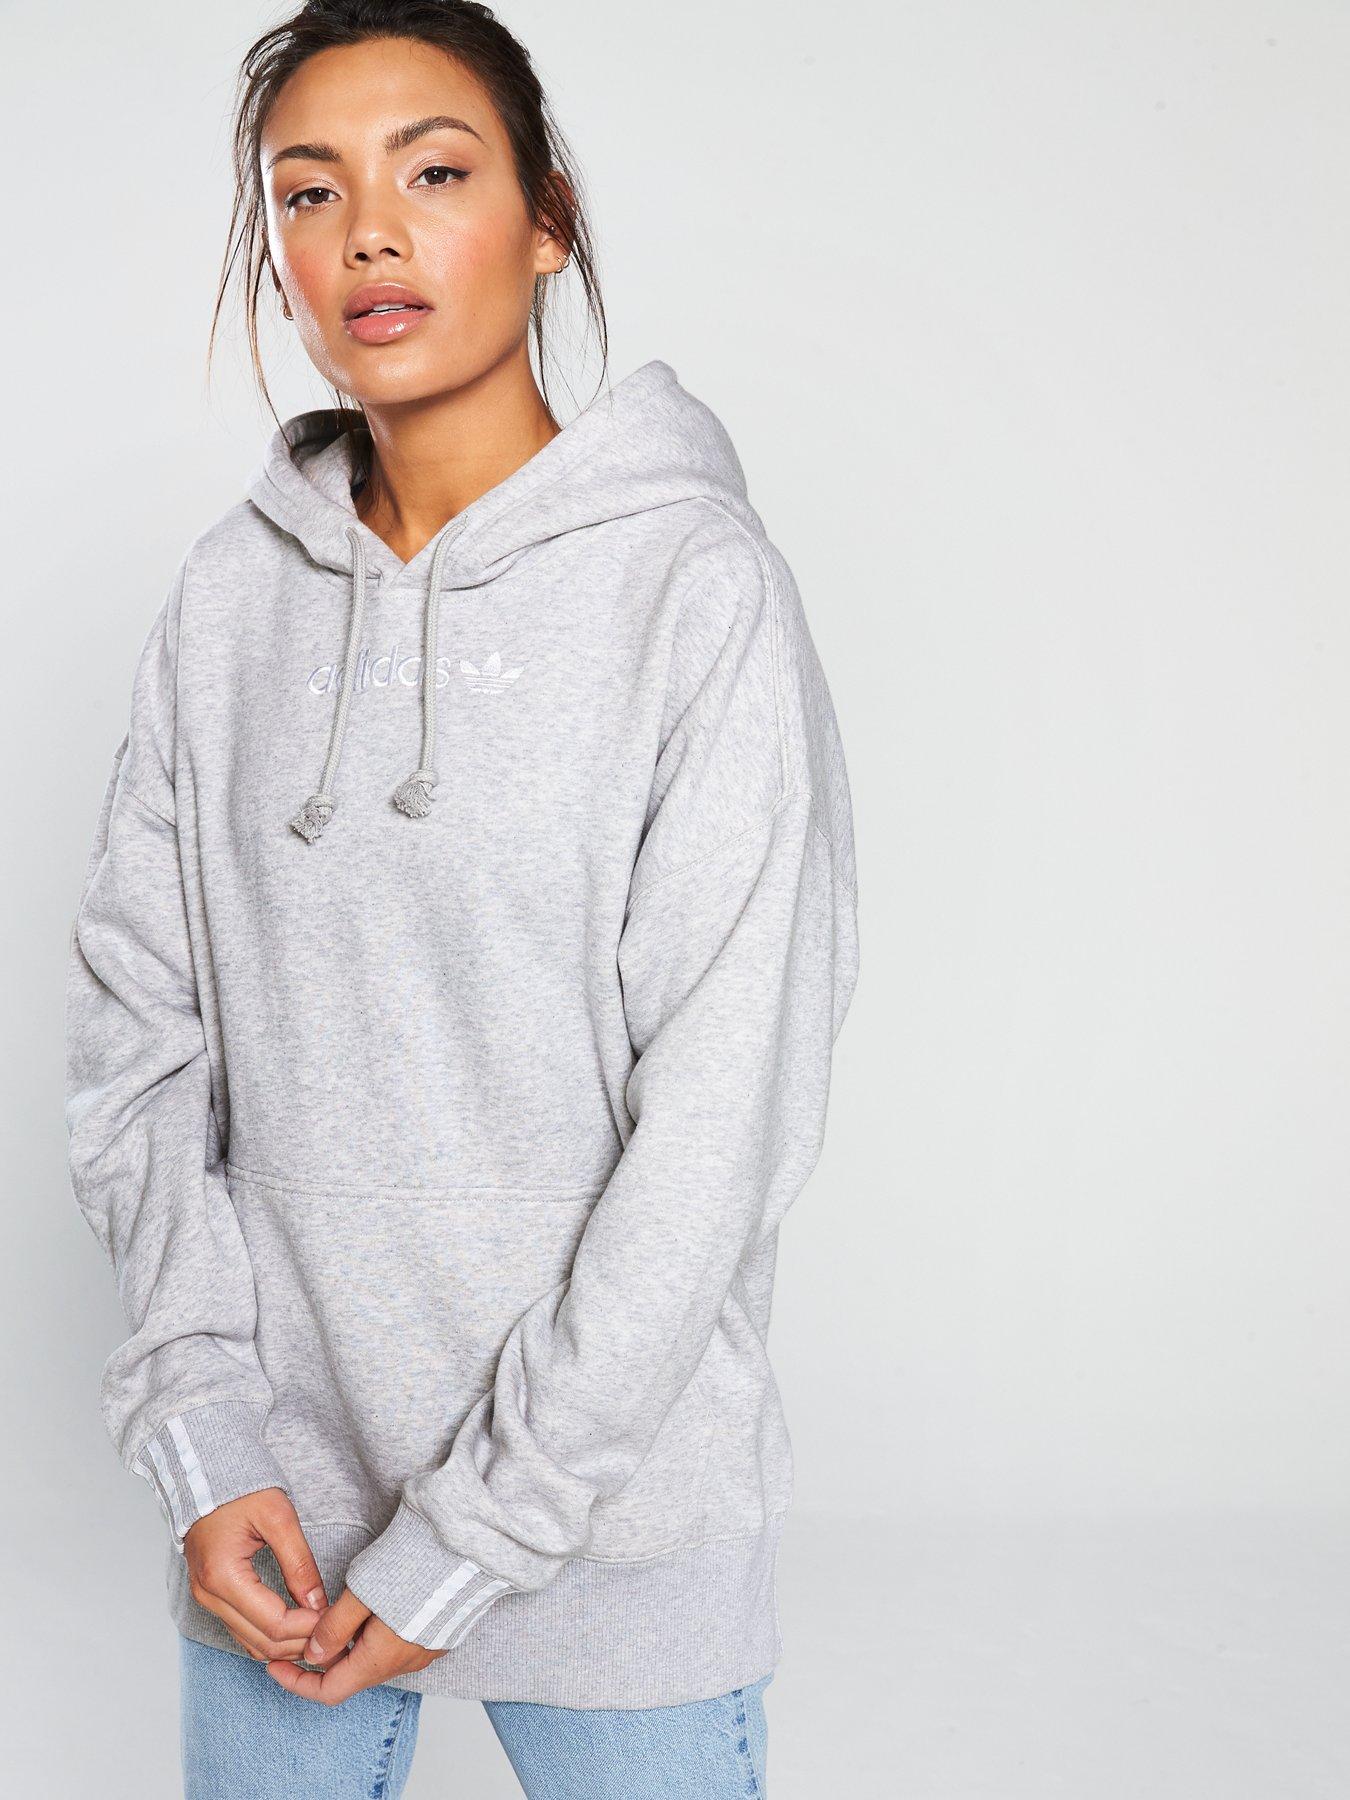 adidas originals coeeze hoodie in grey heather